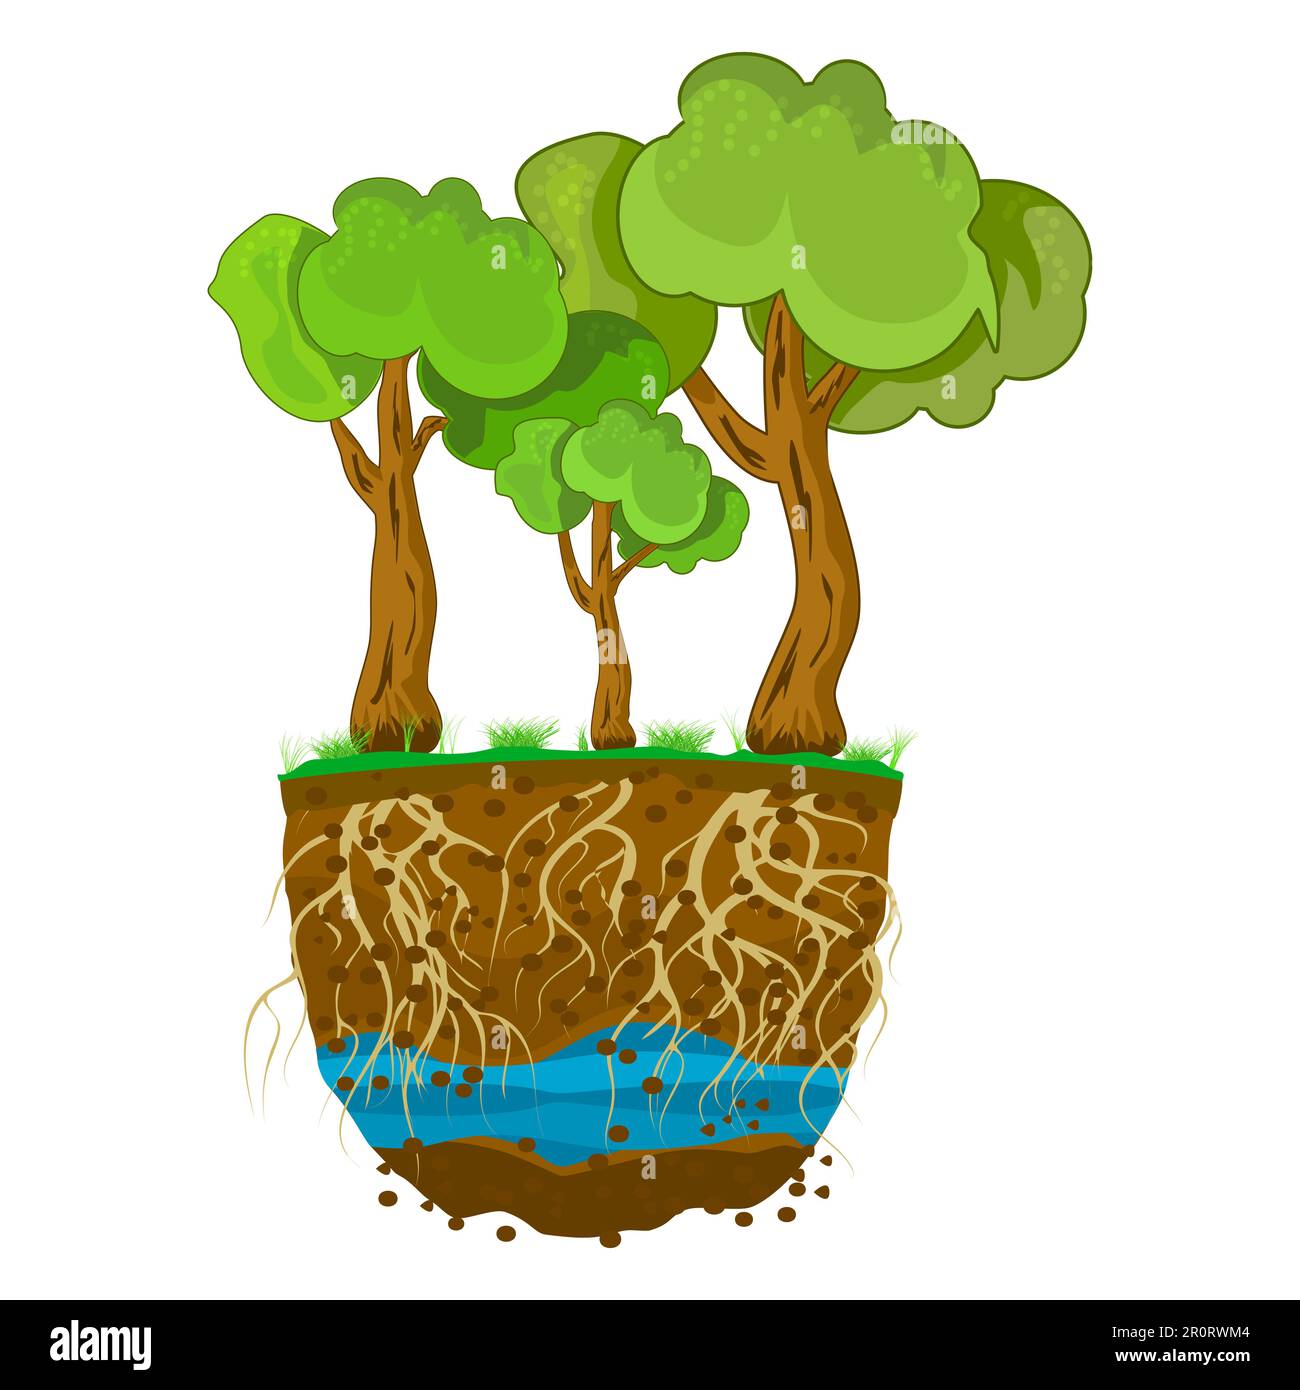 Bäume mit Wurzelsystem im Boden, isoliert auf weißem Hintergrund. Bäume wachsen im Boden. Pflanze mit starken Wurzeln. Schmutzschichten, Wasser und Wurzeln. Kreuz Sek Stock Vektor